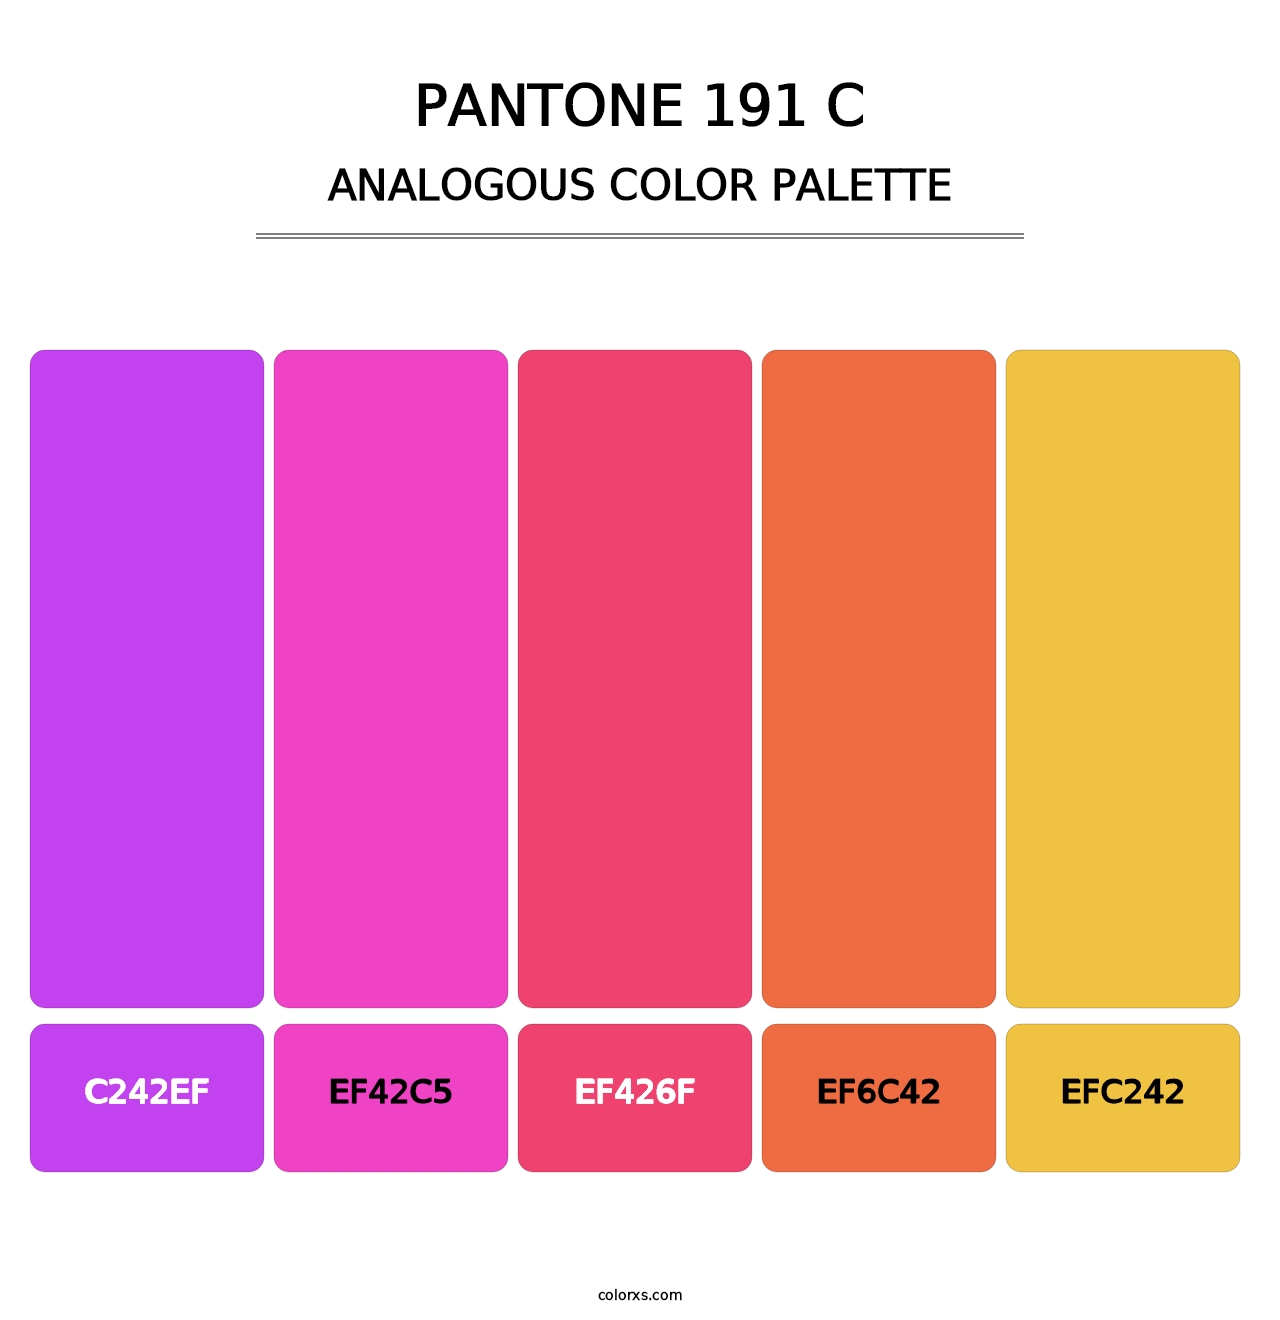 PANTONE 191 C - Analogous Color Palette